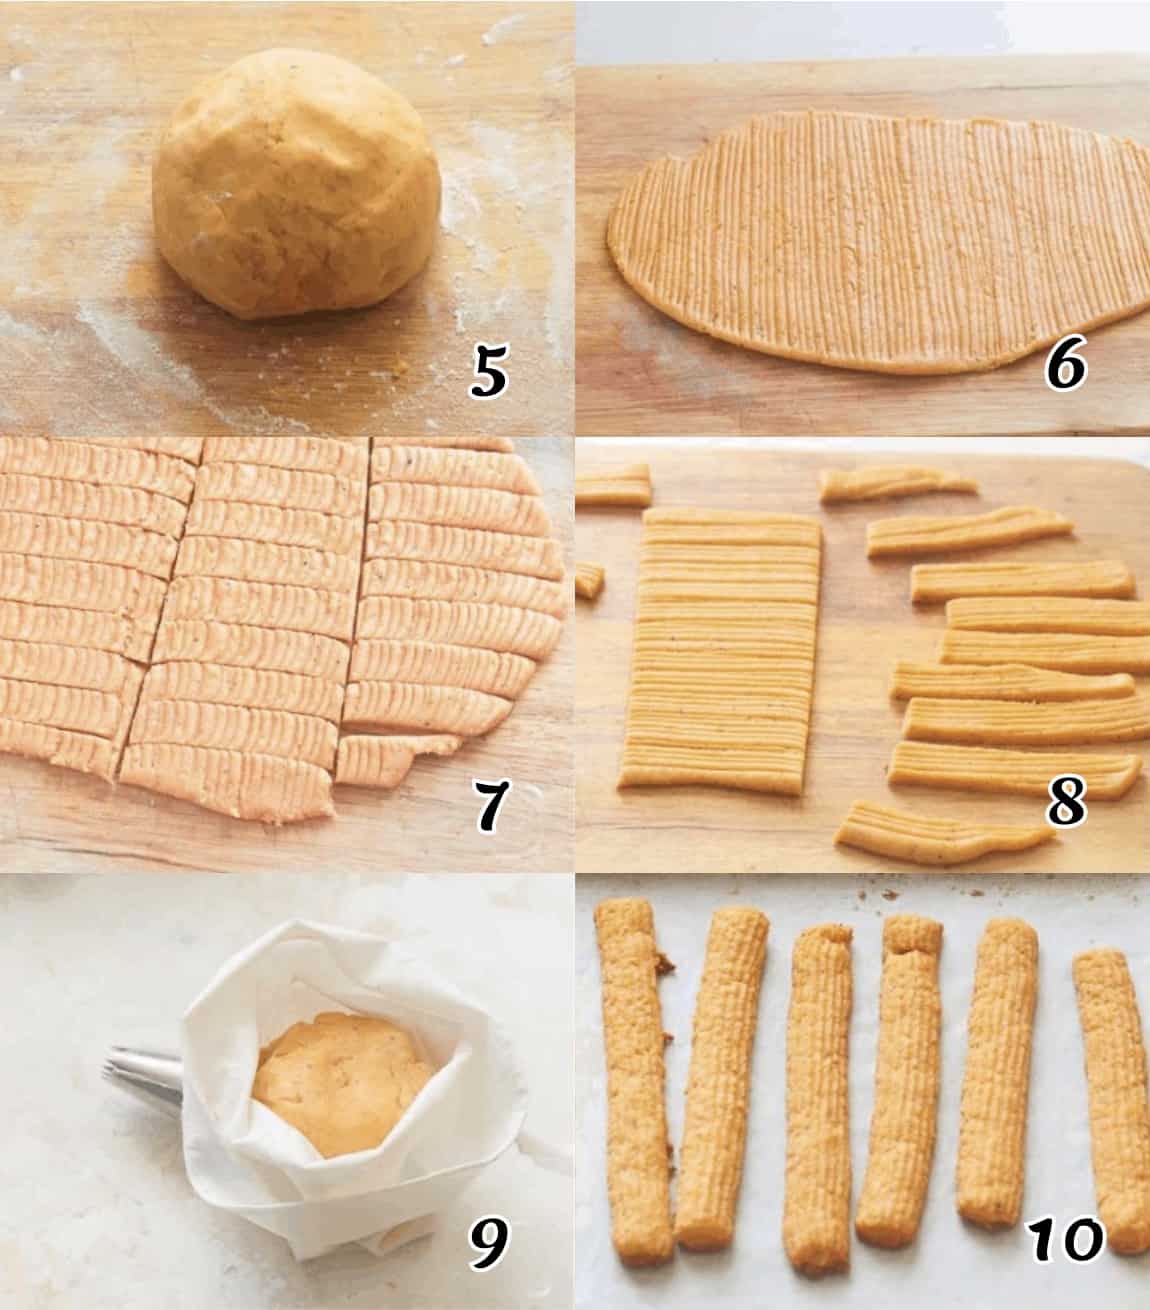 Form the dough into sticks and bake